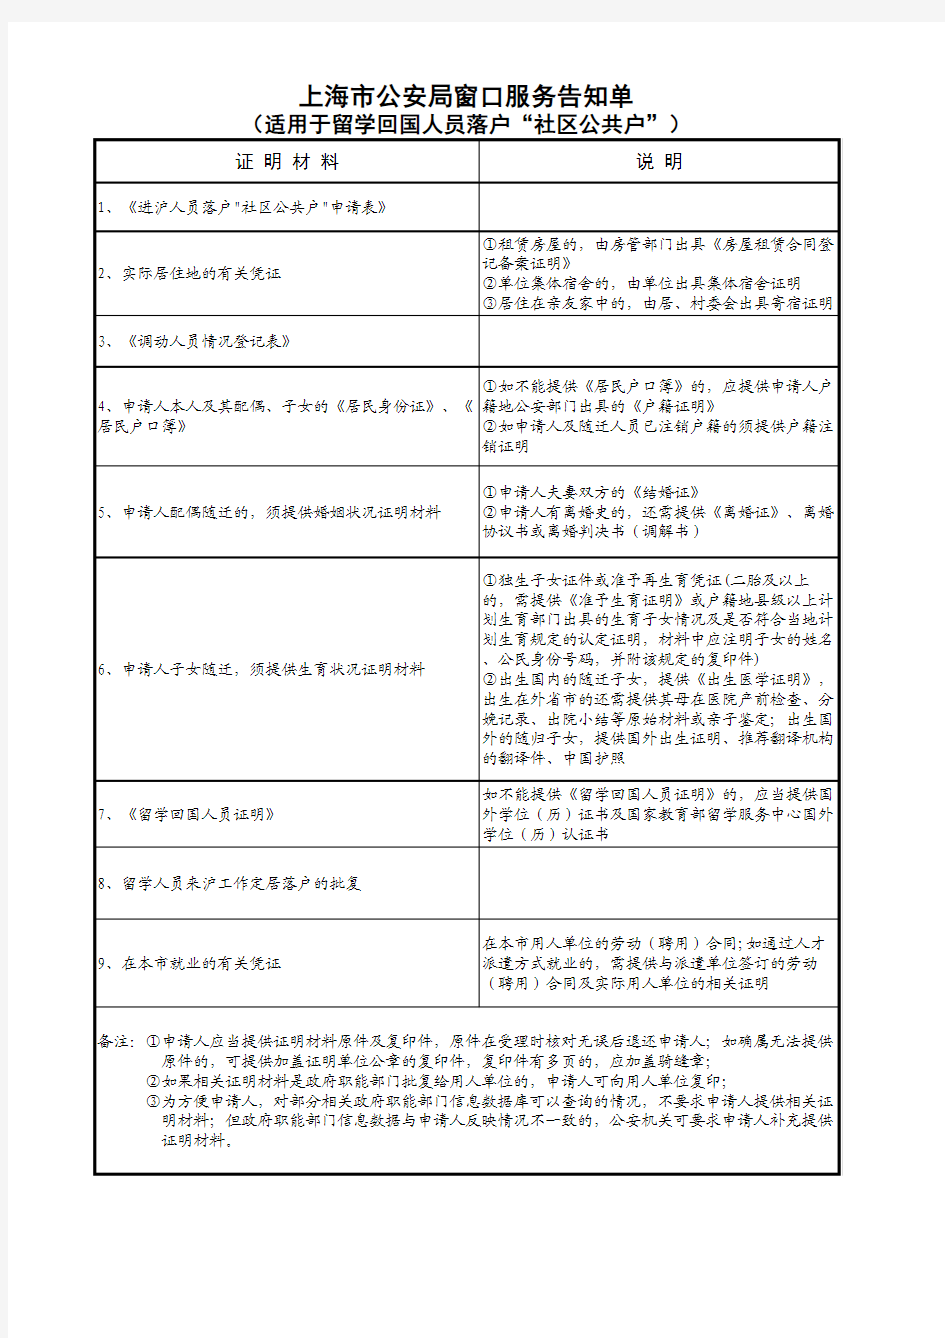 上海市公安局窗口服务告知单